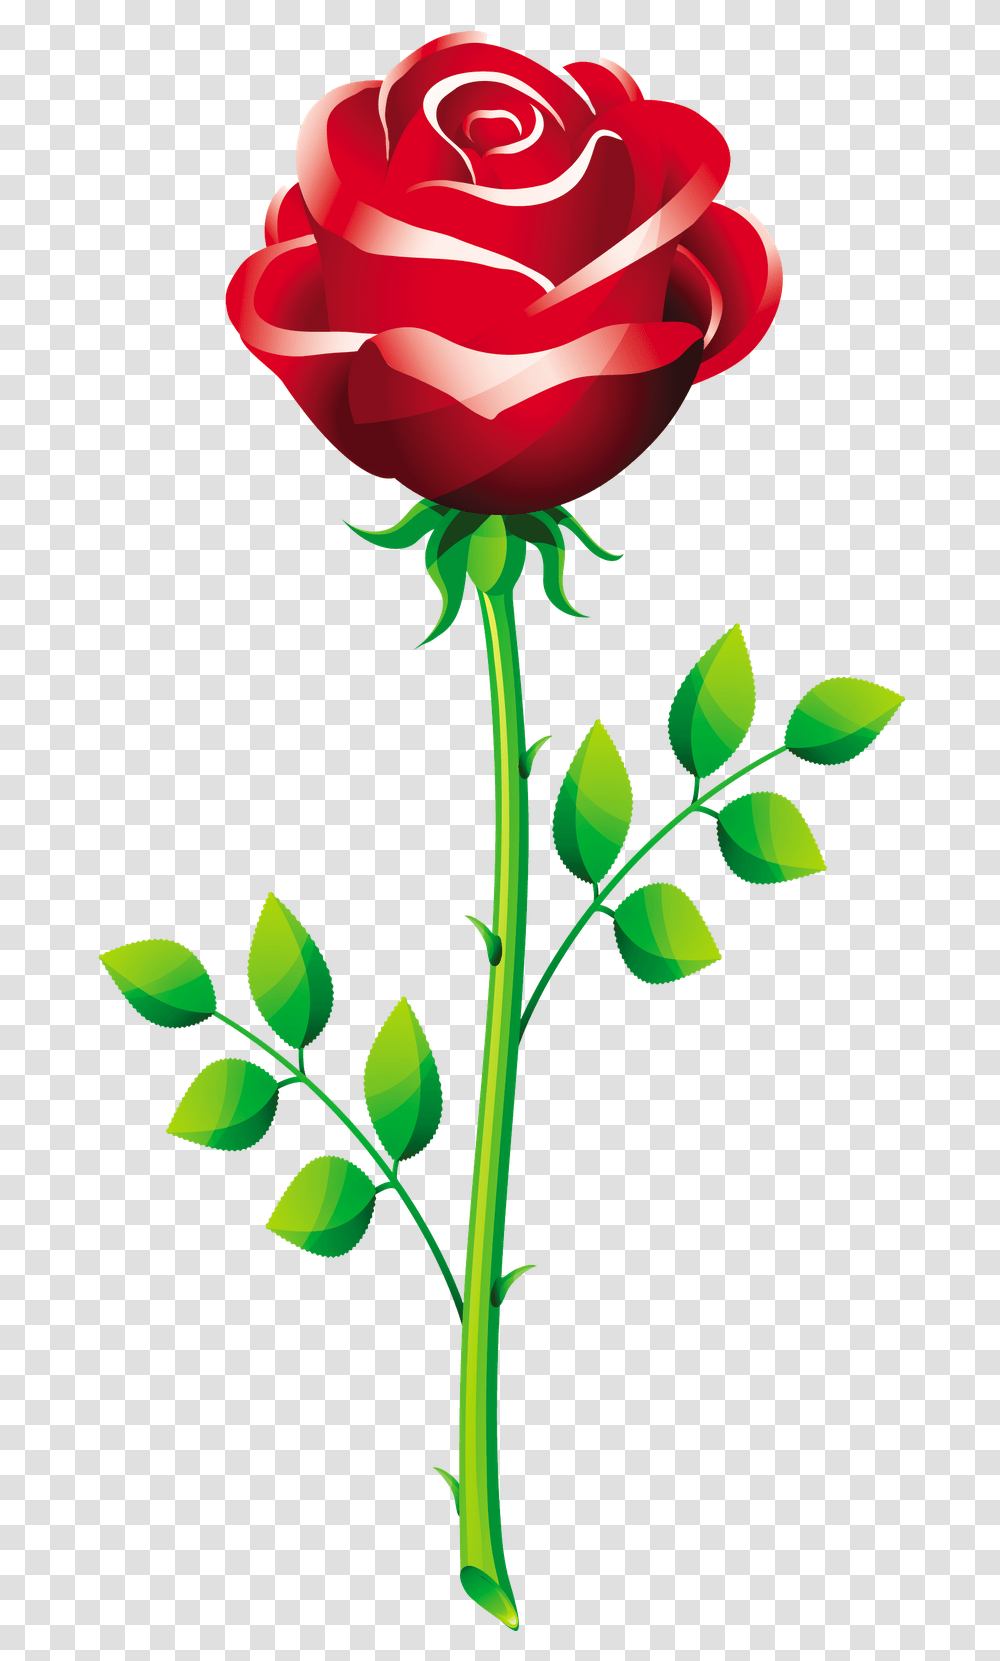 Flowers For Rose Flower Vector Rose Flower Vector, Plant, Blossom, Leaf, Petal Transparent Png